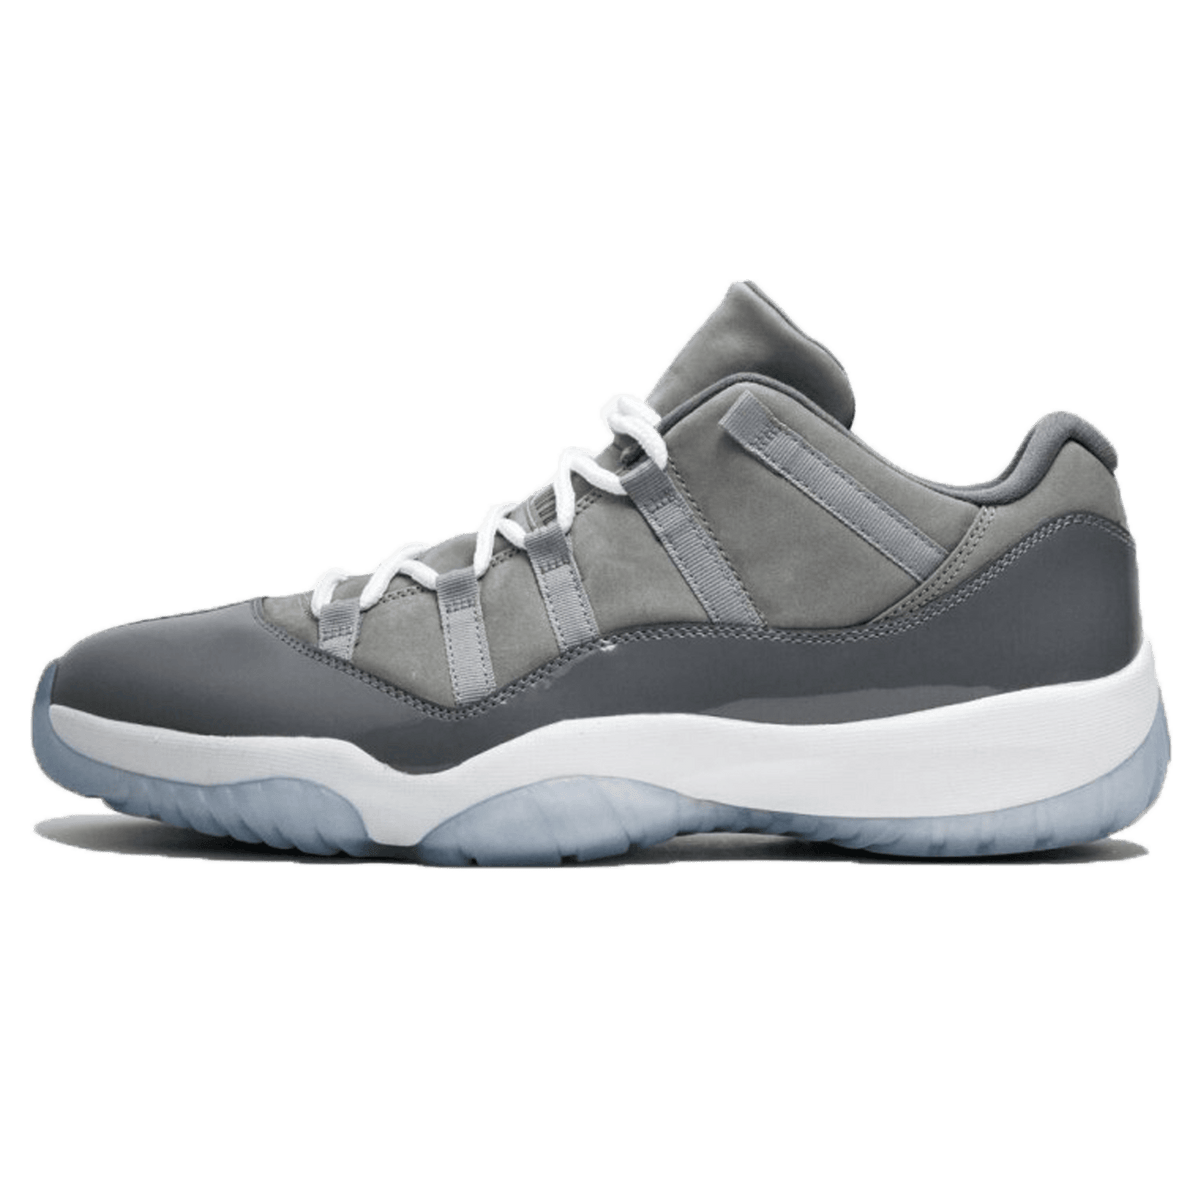 Air Jordan 11 Retro Low 'Cool Grey' - Kick Game